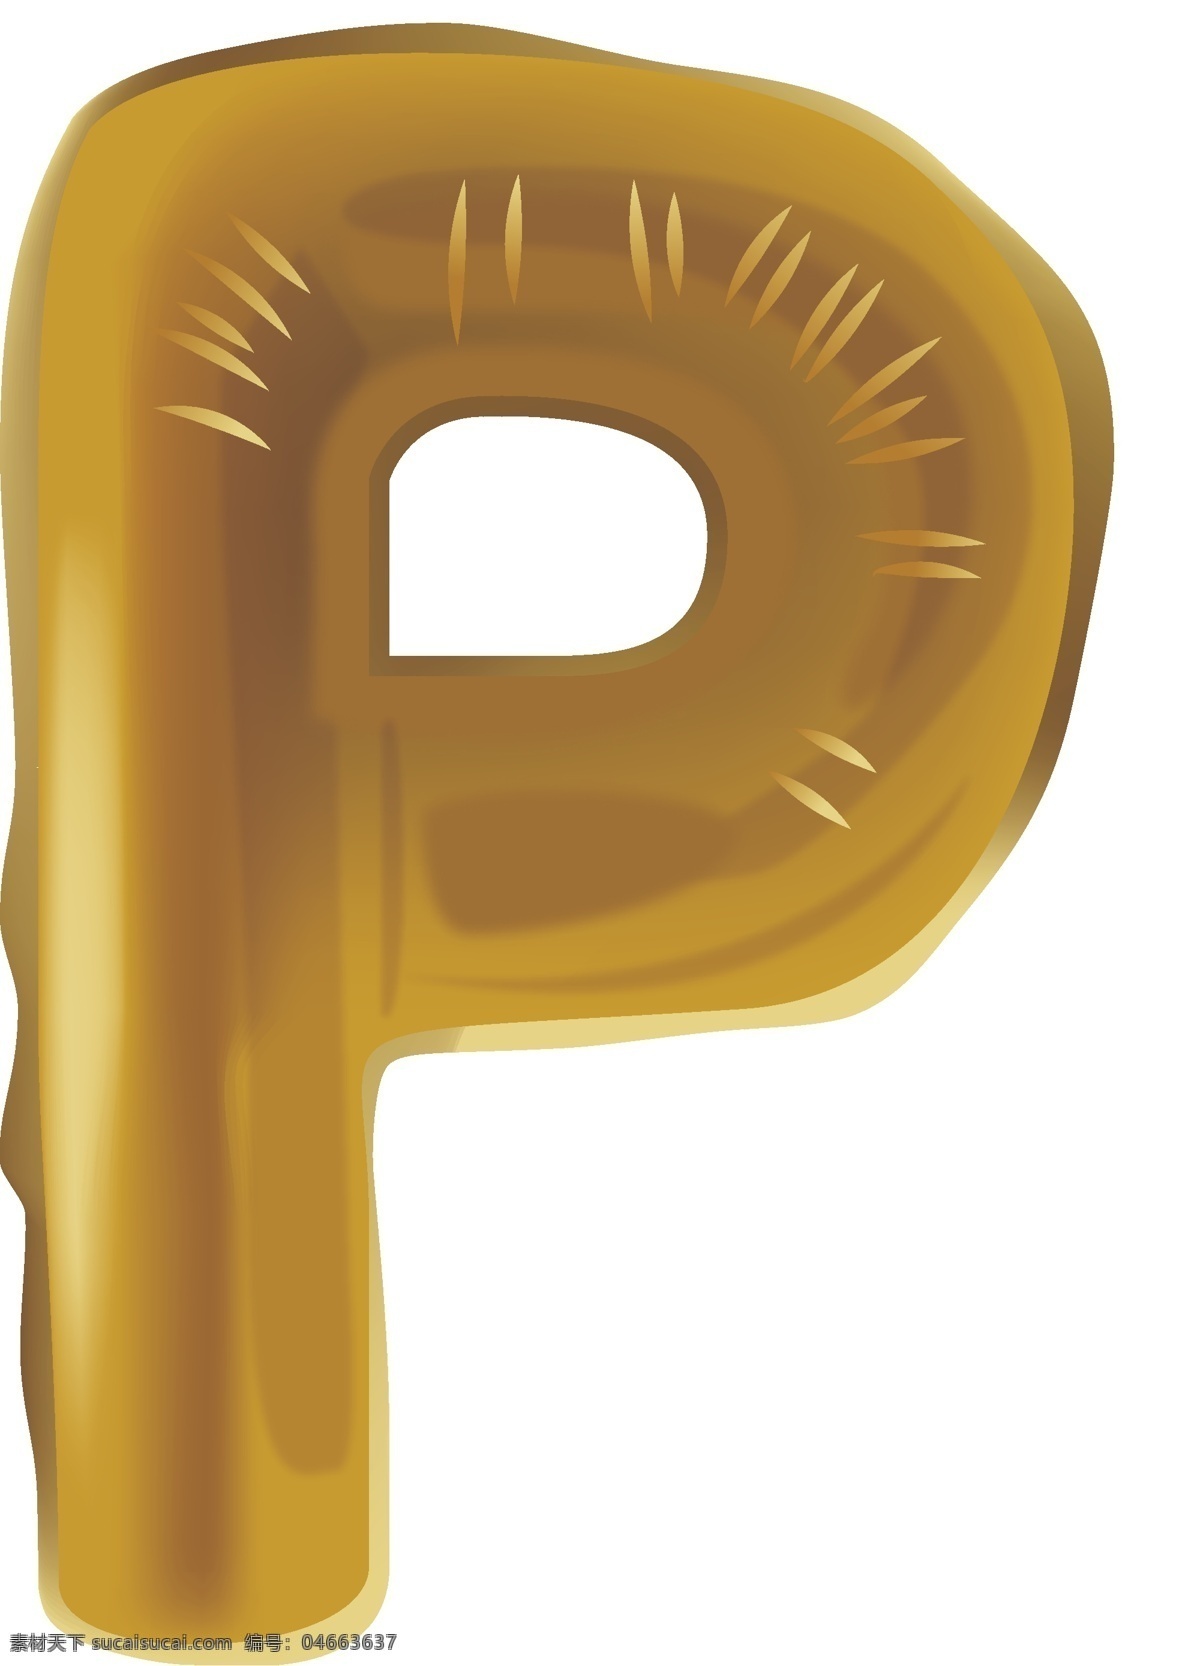 创意 气球 节日 字母 p 金色 金色气球 字母p 创意金色 气球节日